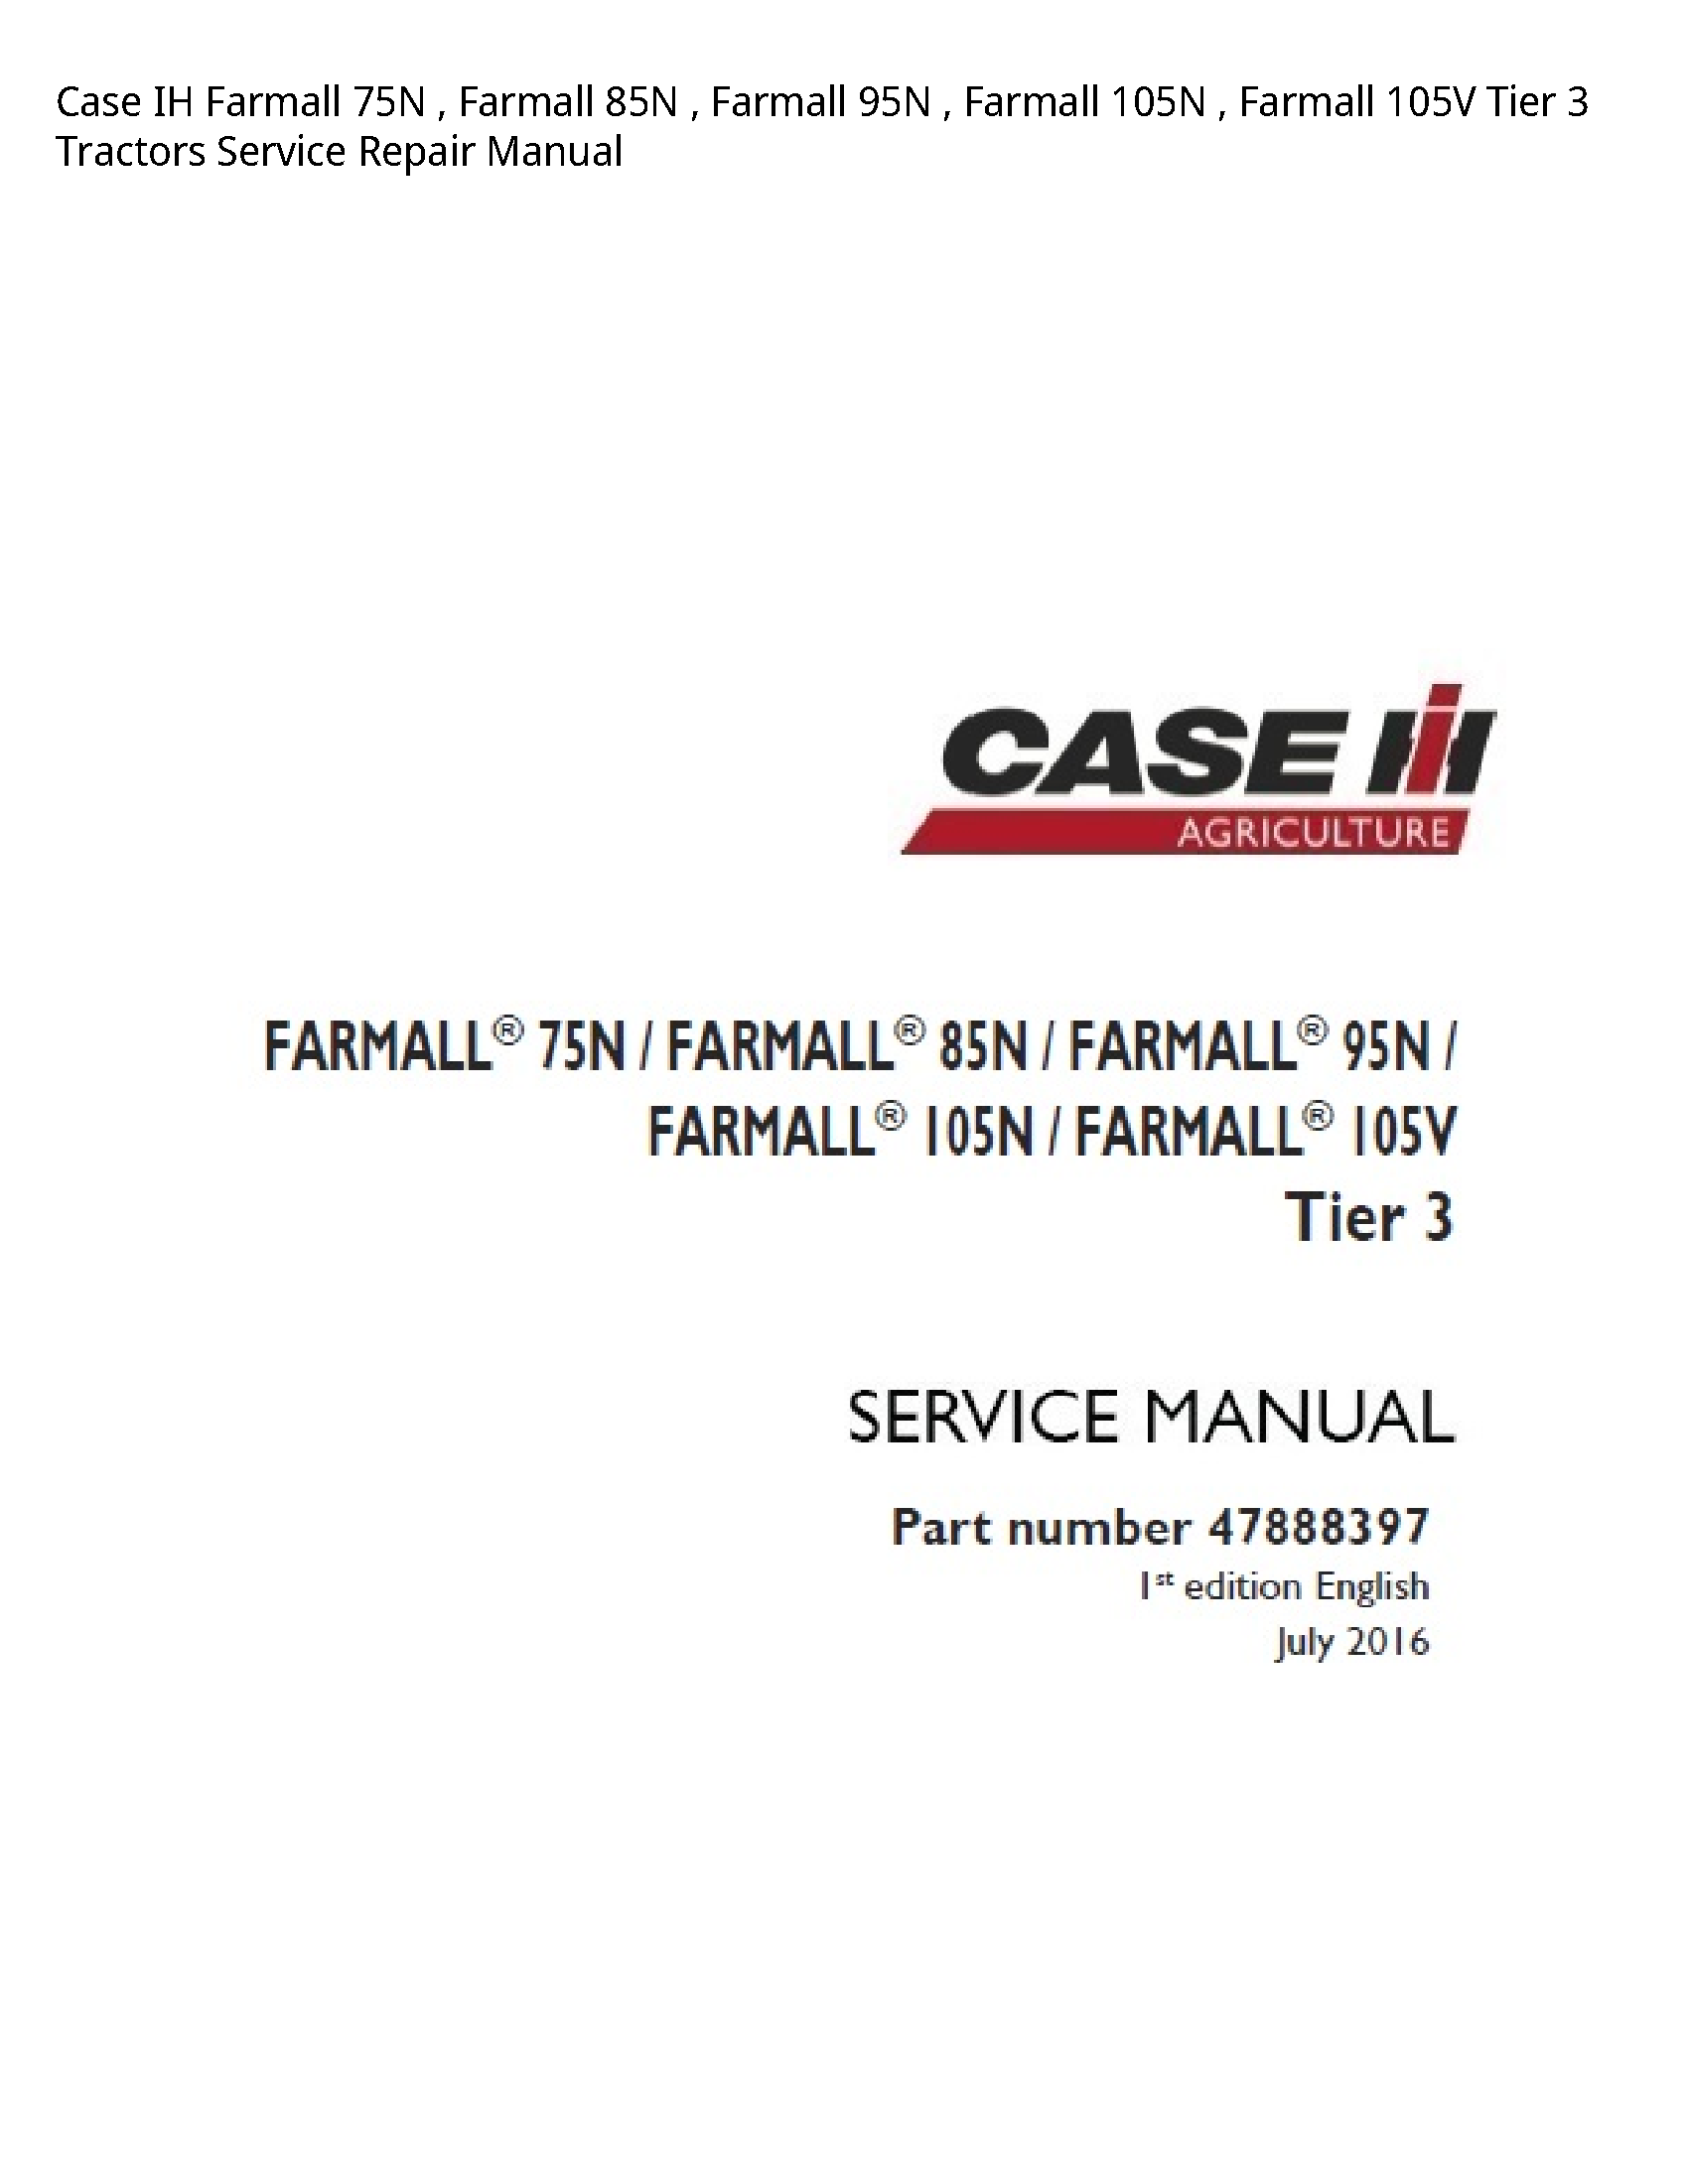 Case/Case IH 75N IH Farmall Farmall Farmall Farmall Farmall Tier Tractors manual